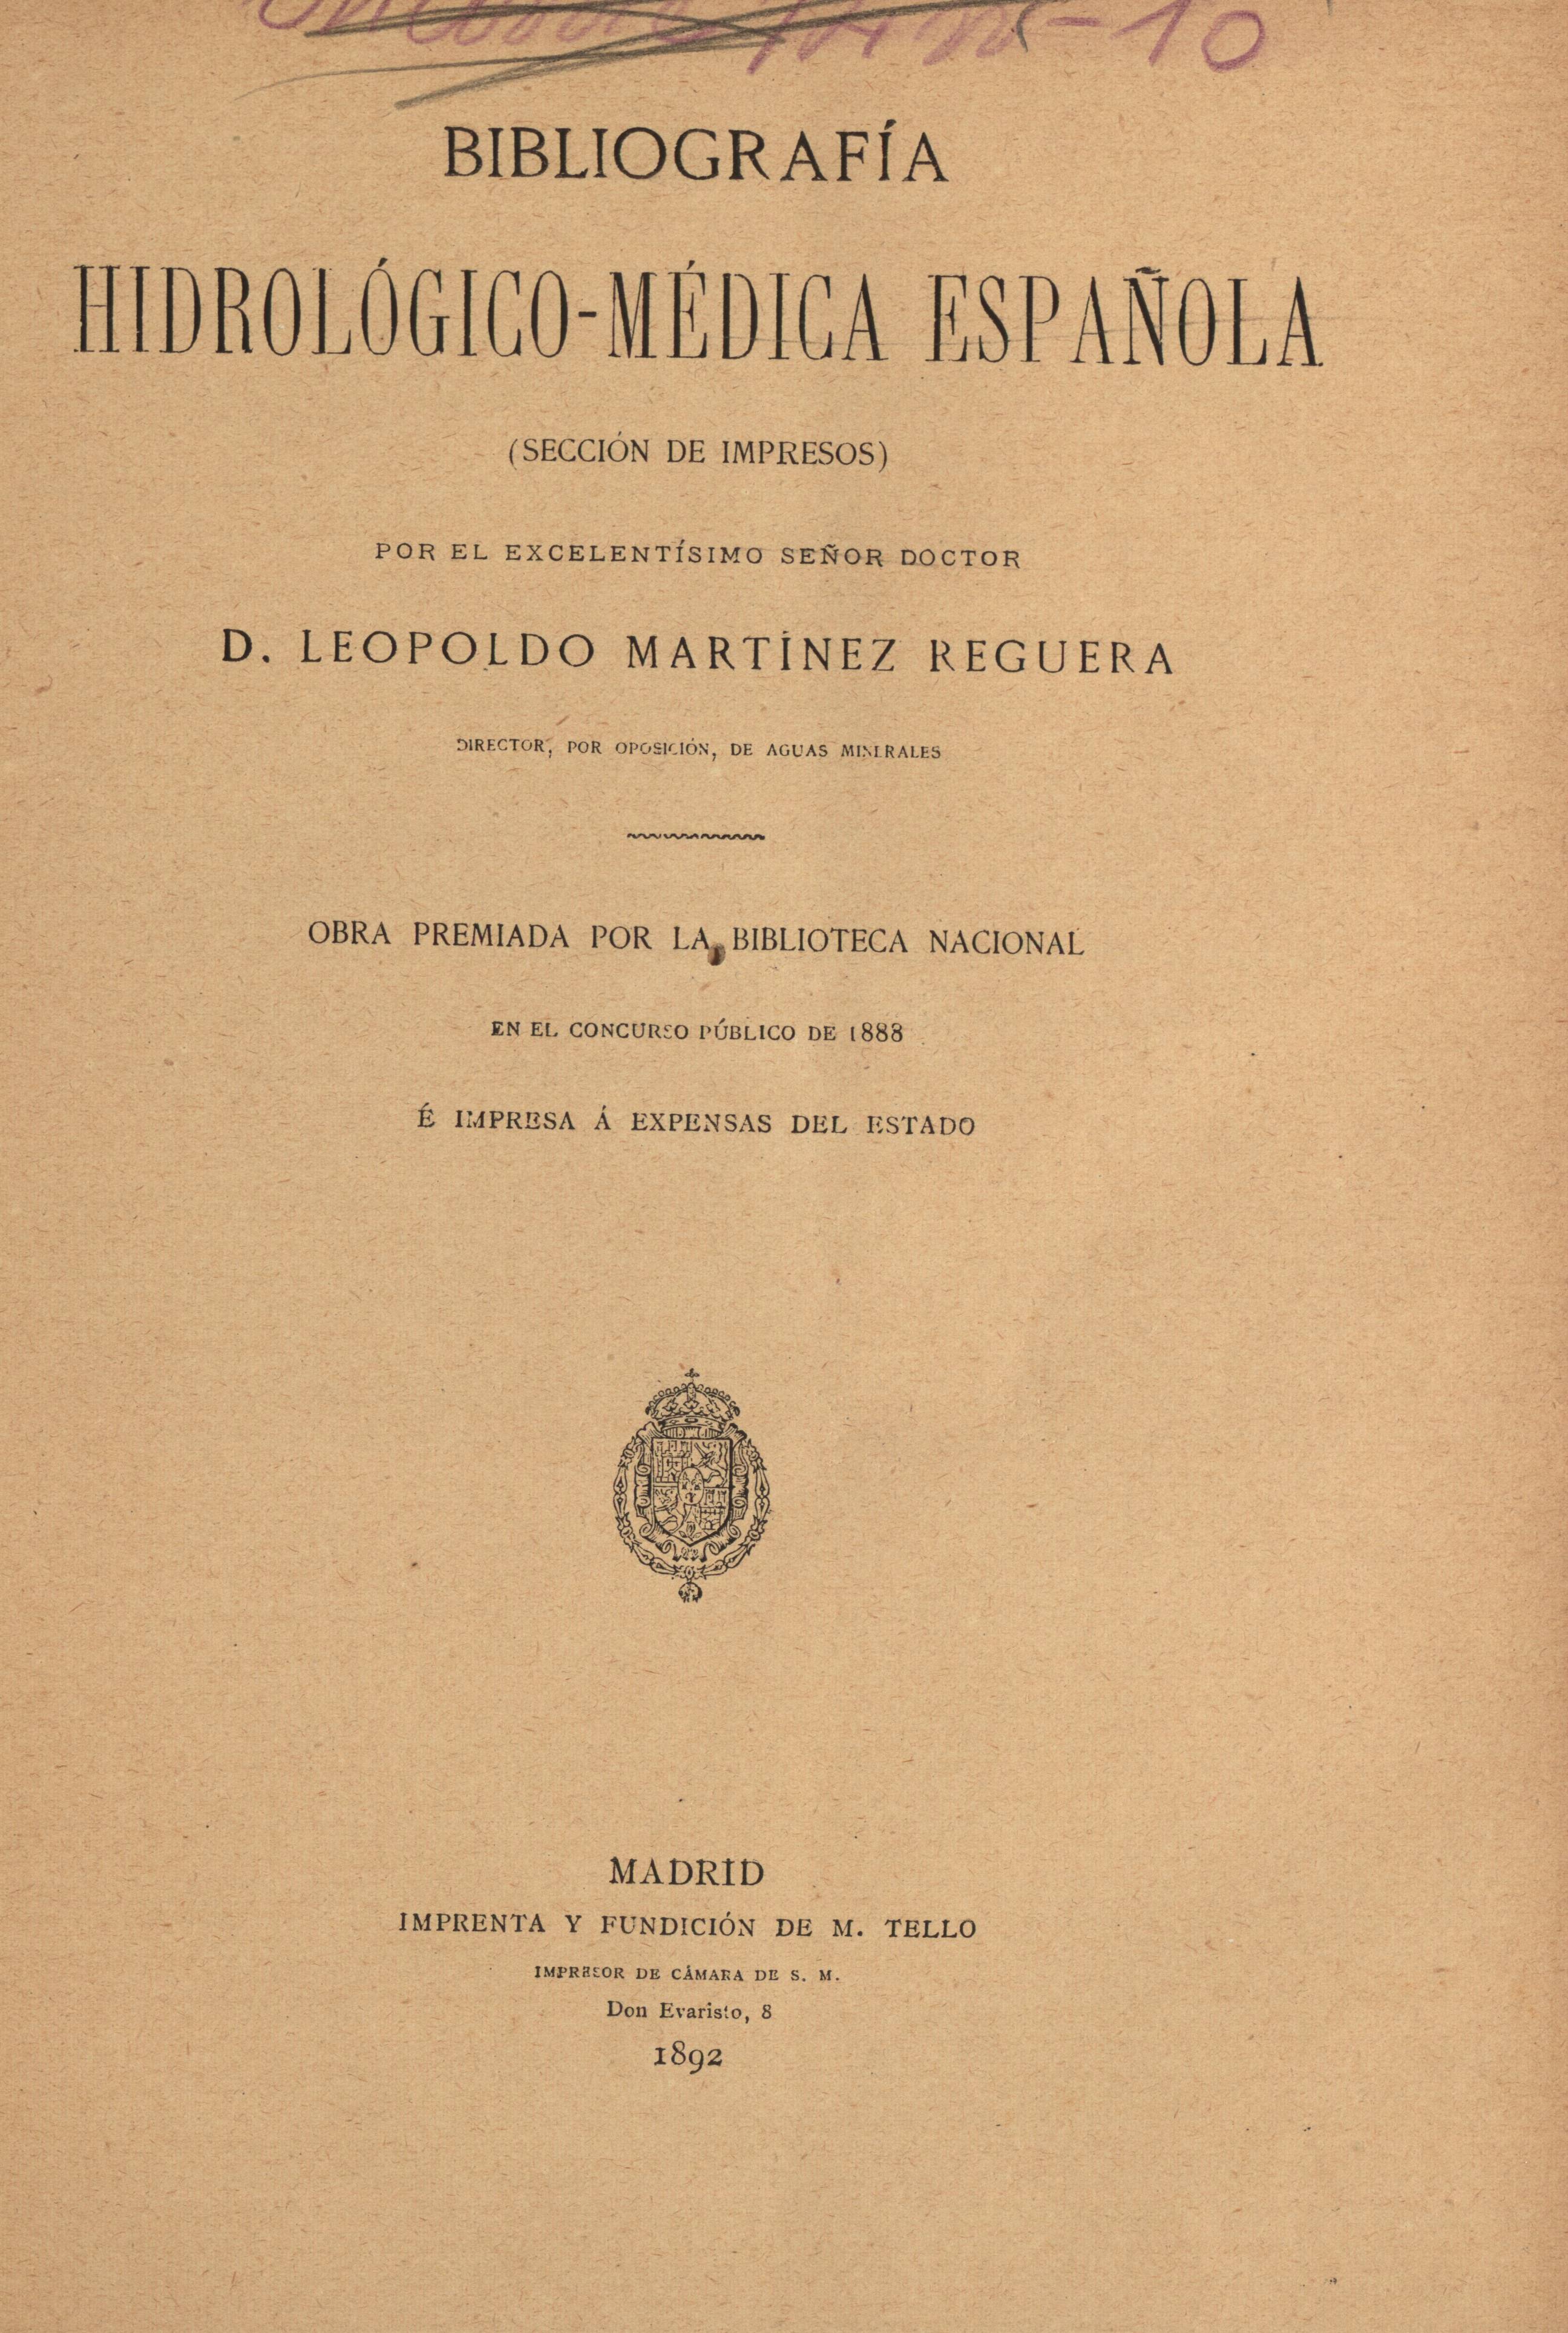 Bibliografía hidrológico-médica española (Sección de impresos)